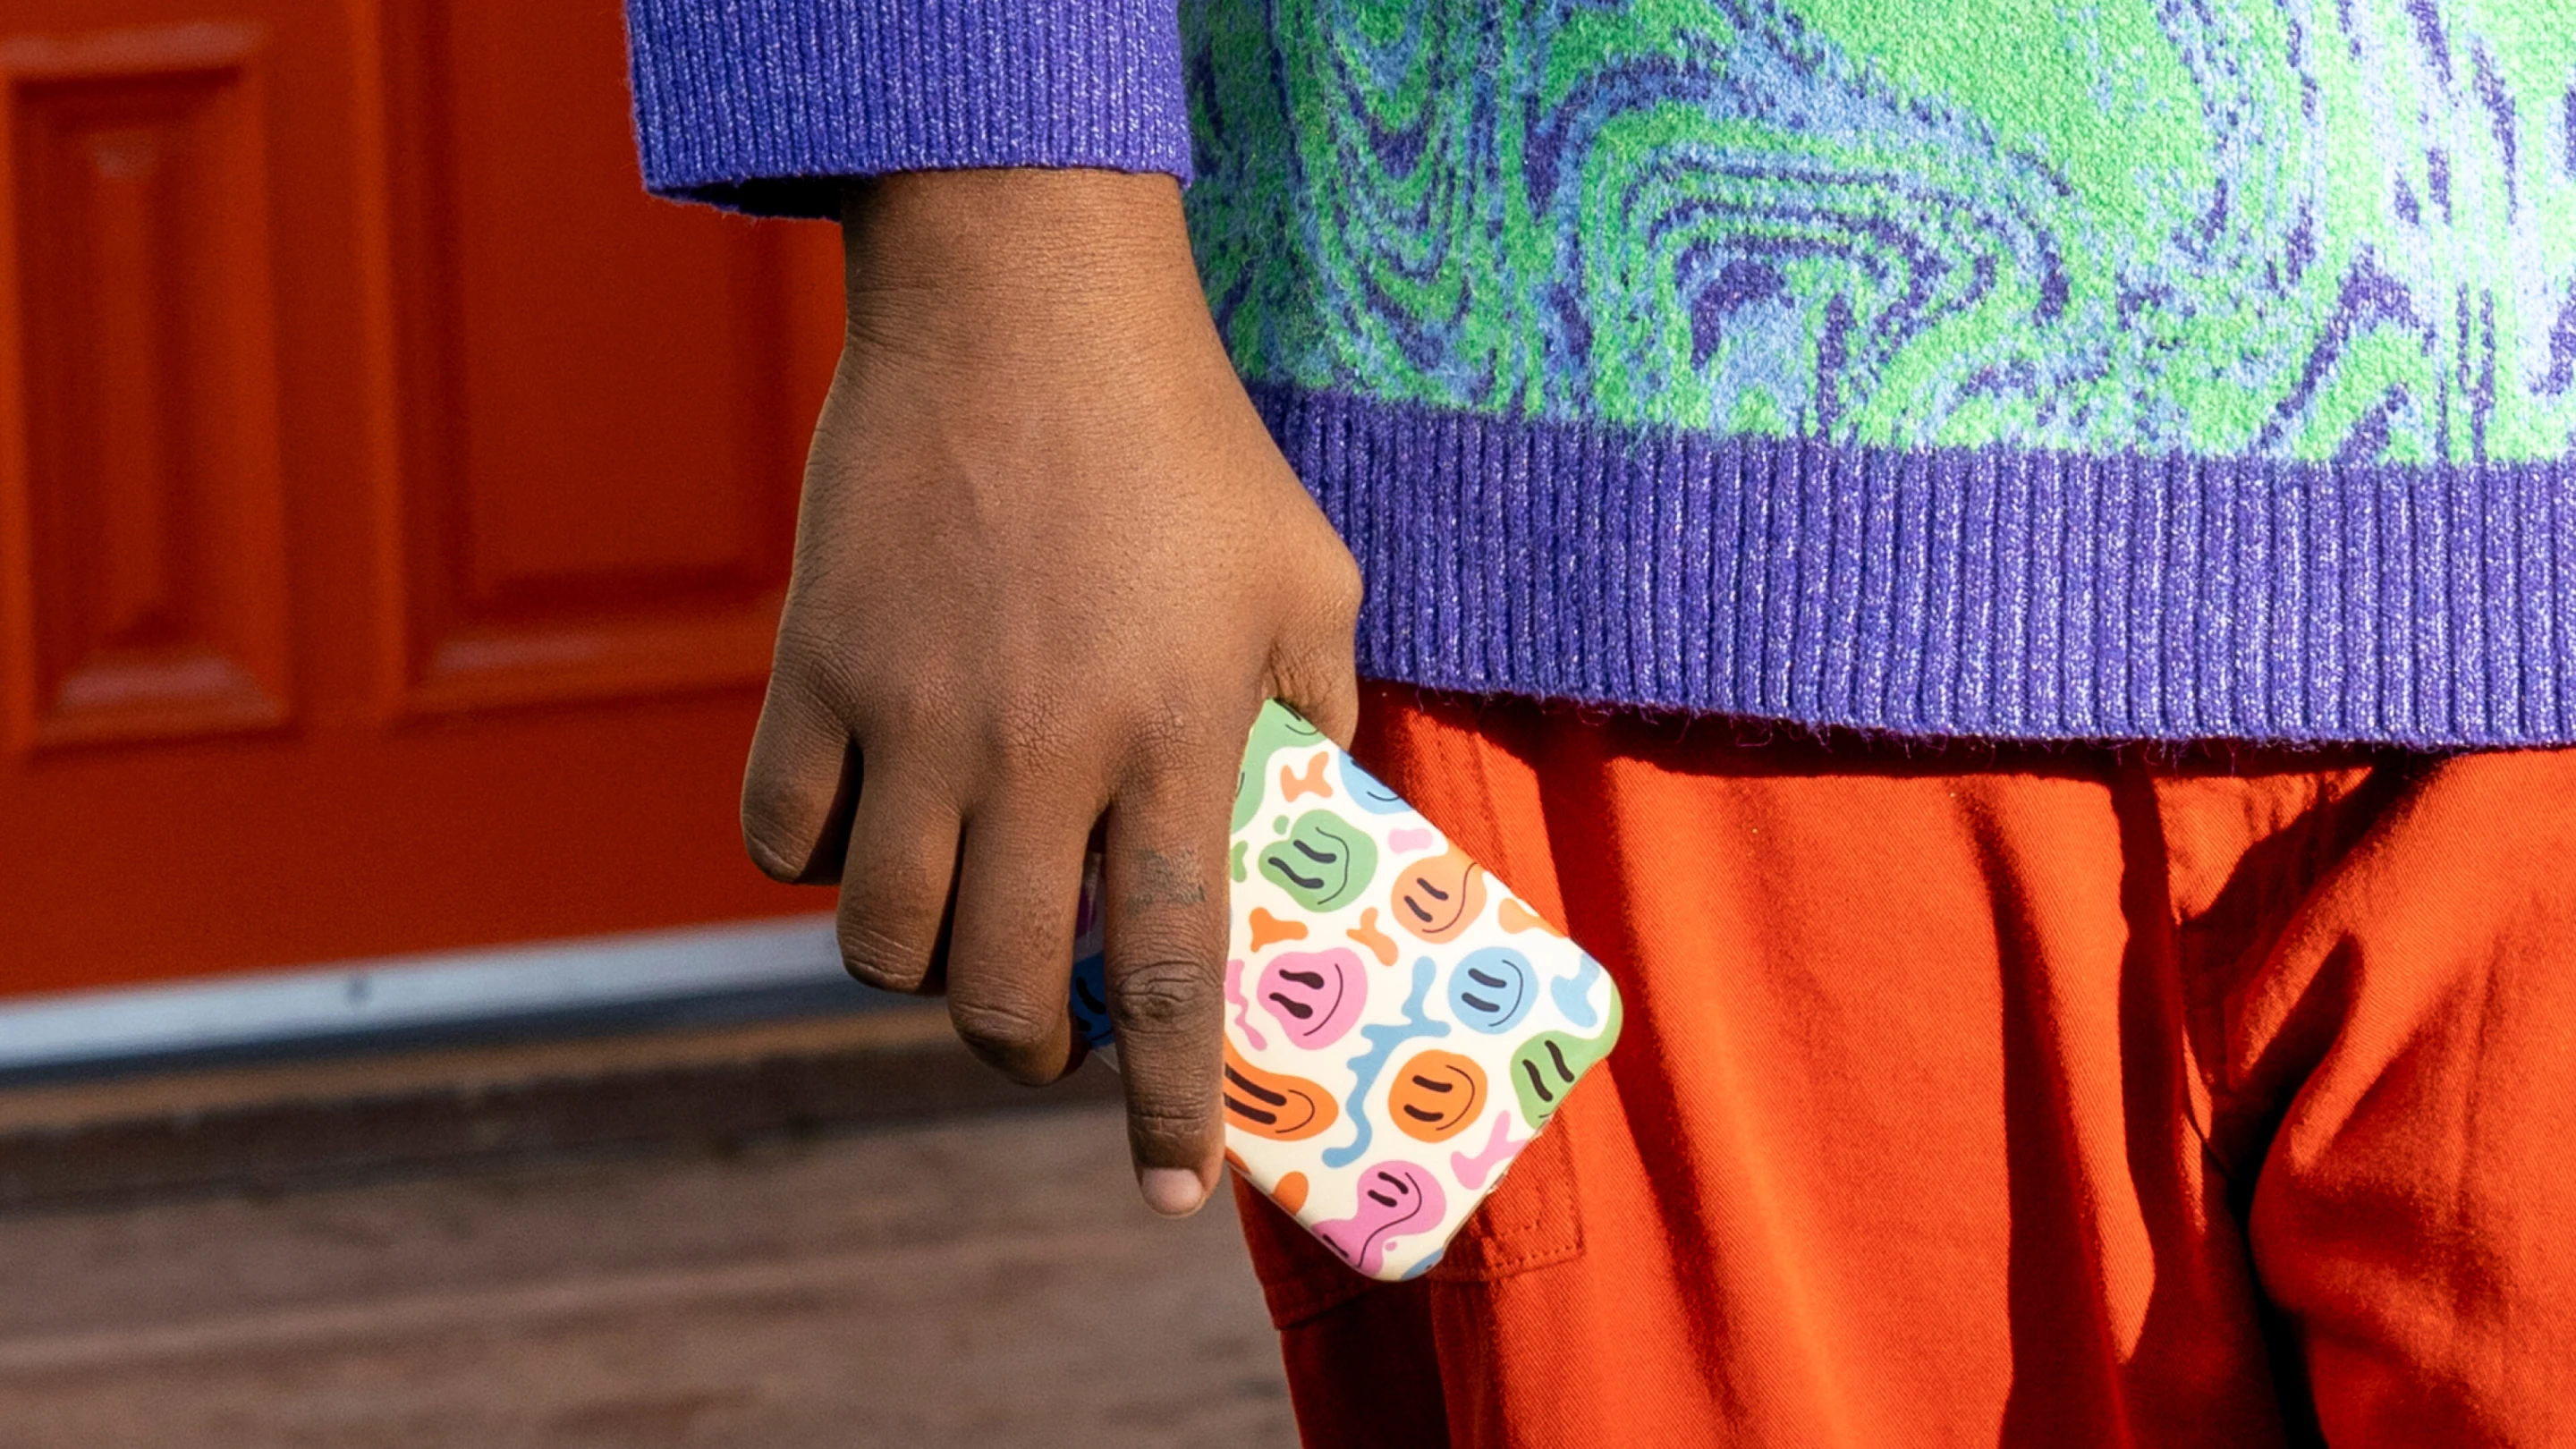 Uma pessoa vestindo um suéter colorido segura um telefone na mão. A capa do telefone é coberta por carinhas sorridentes de arco-íris.